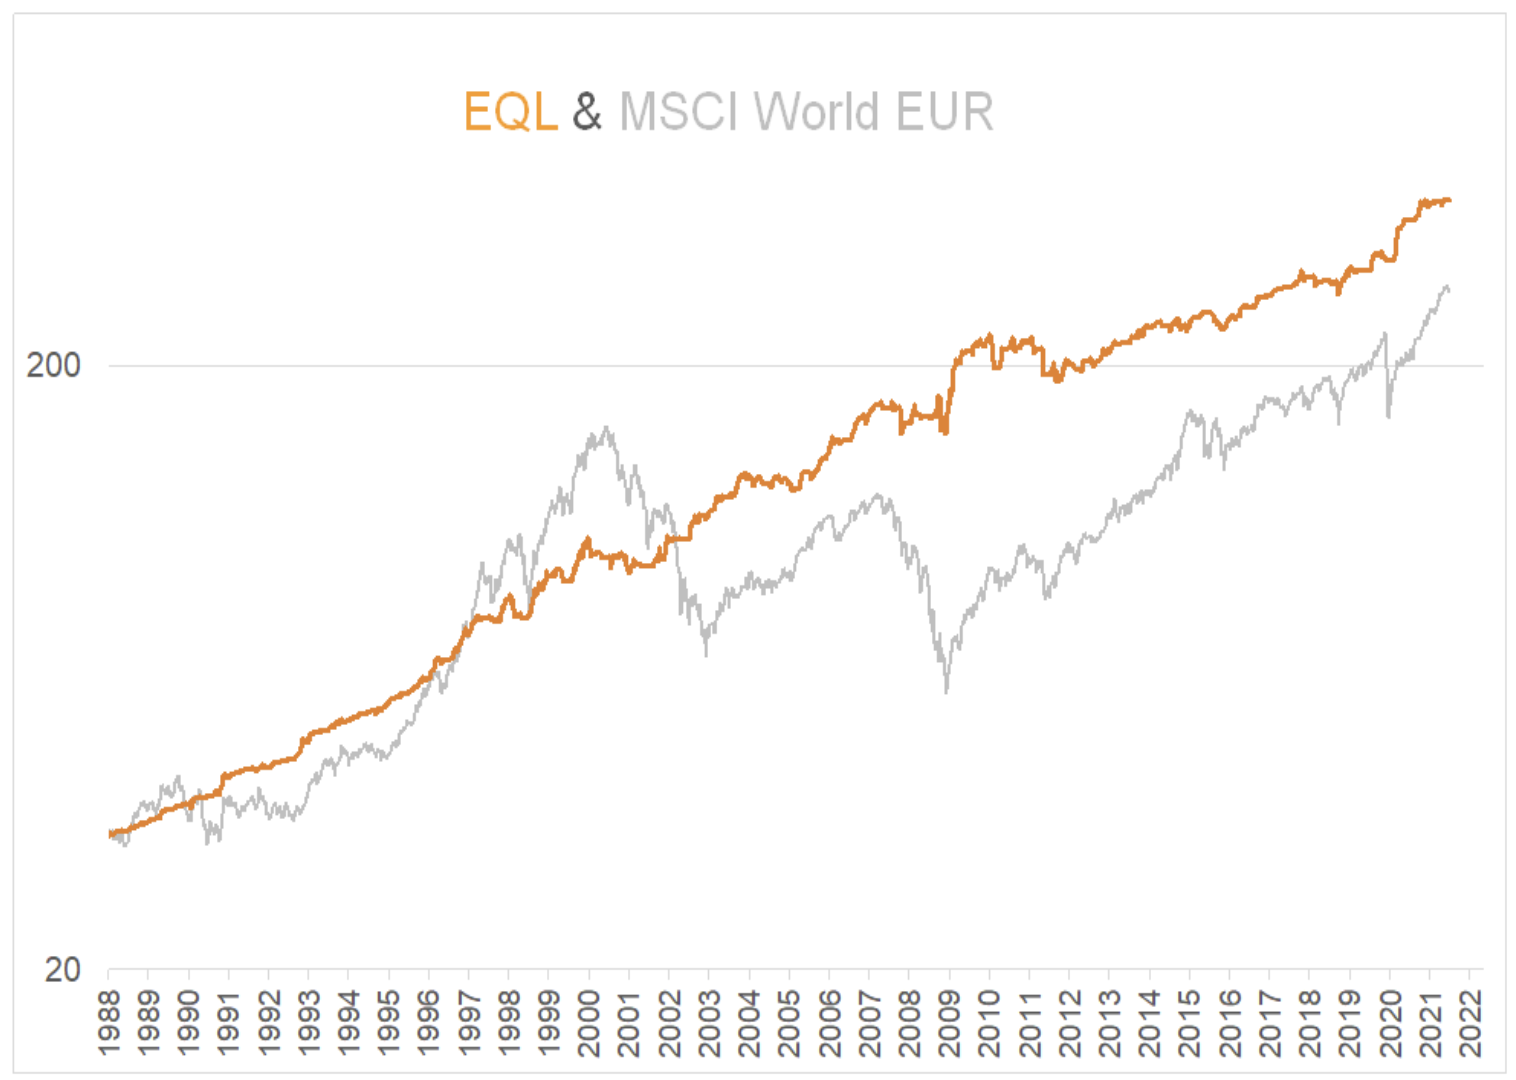 Modell vs. MSCI World (EUR)